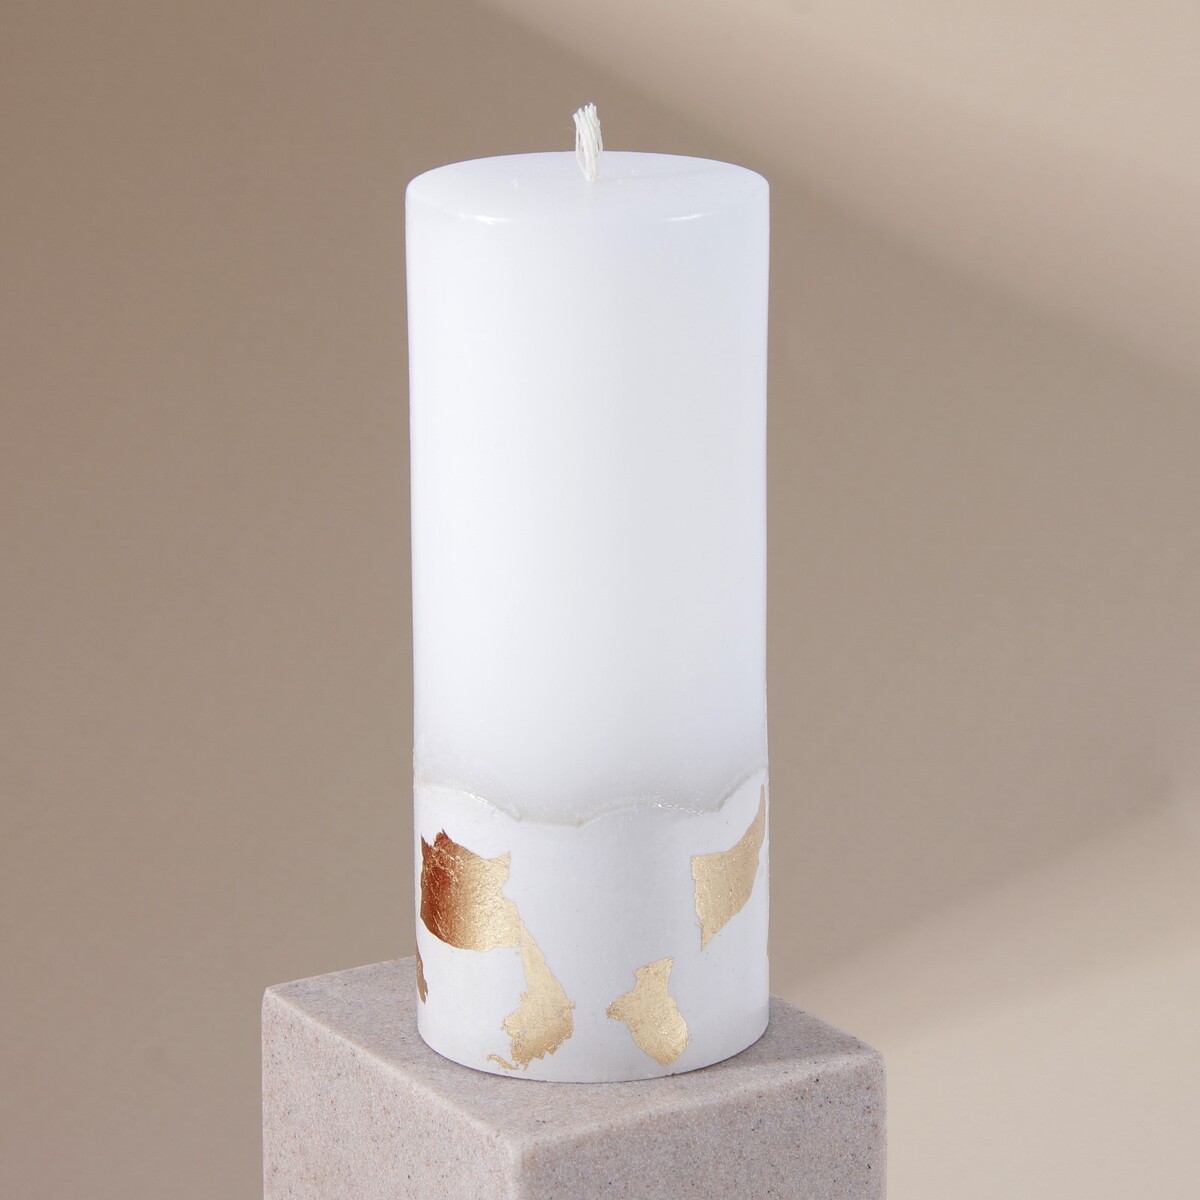 Свеча интерьерная белая с бетоном (поталь), 15 х 6 см свеча античная 2 2х26 см пальмовый воск белая 2 ч